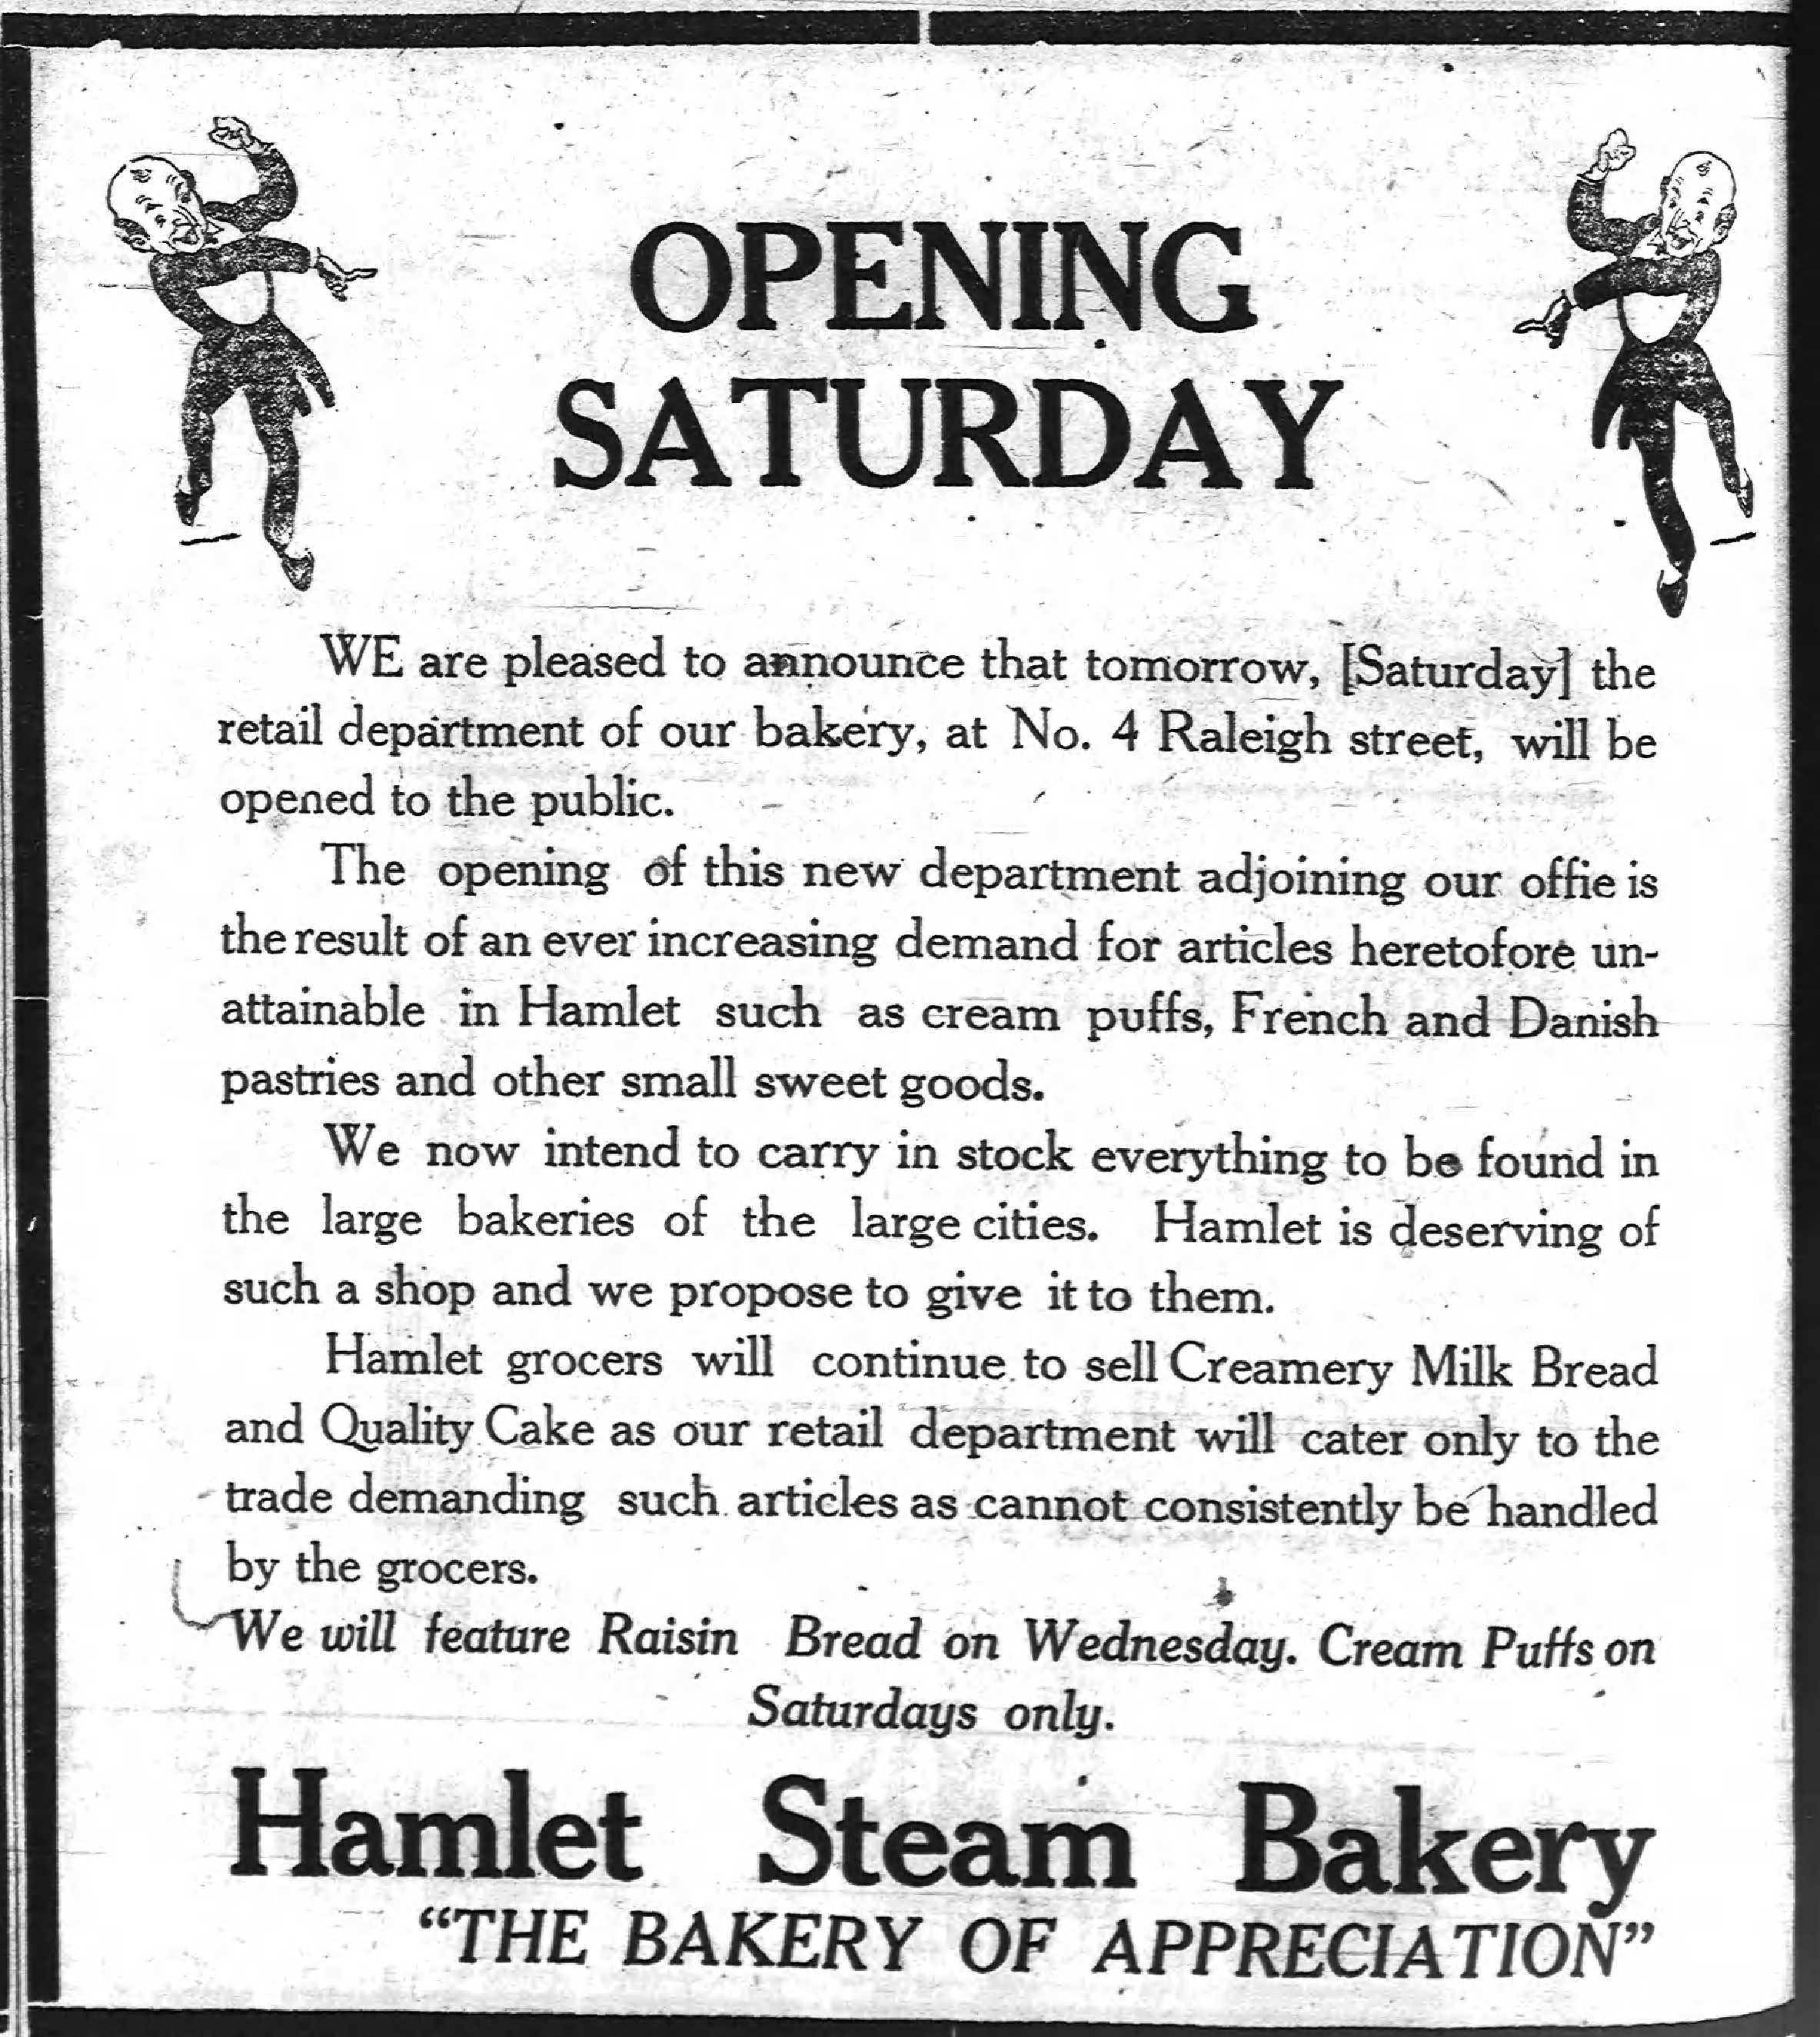 Hamlet Steam Bakery 1924.jpg